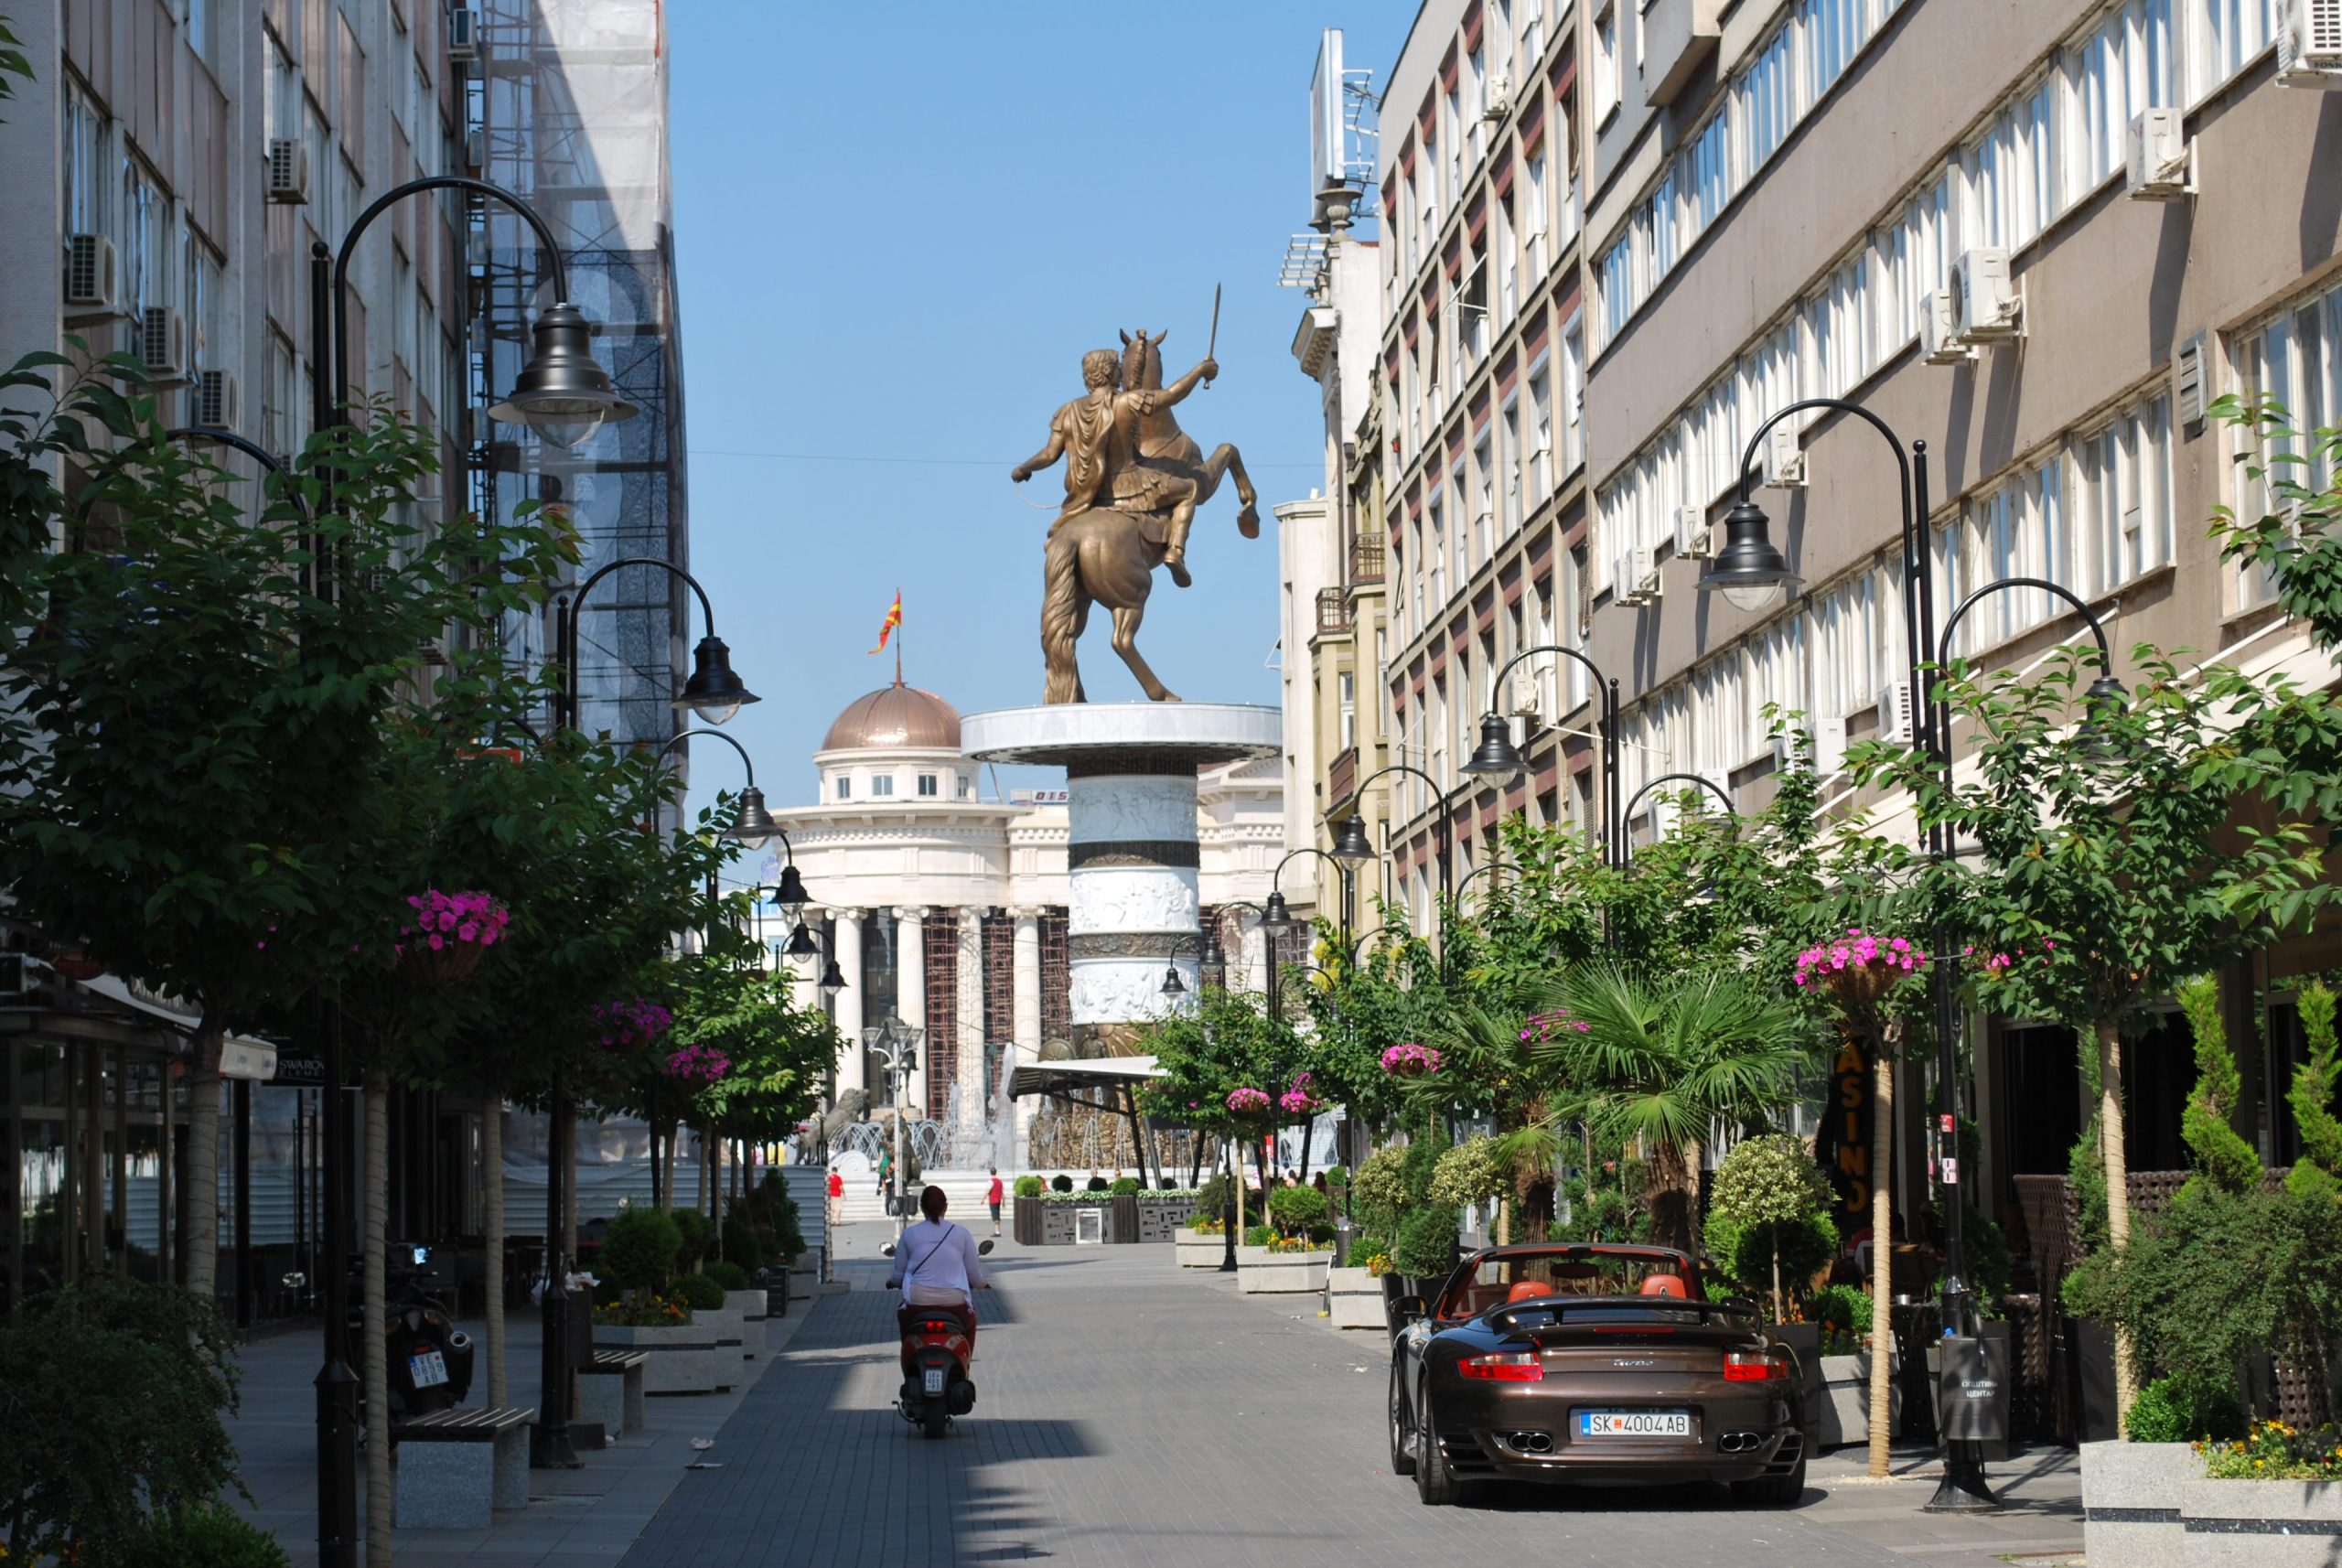 Cuentos de misterio e imaginación en Skopje - Parte 2